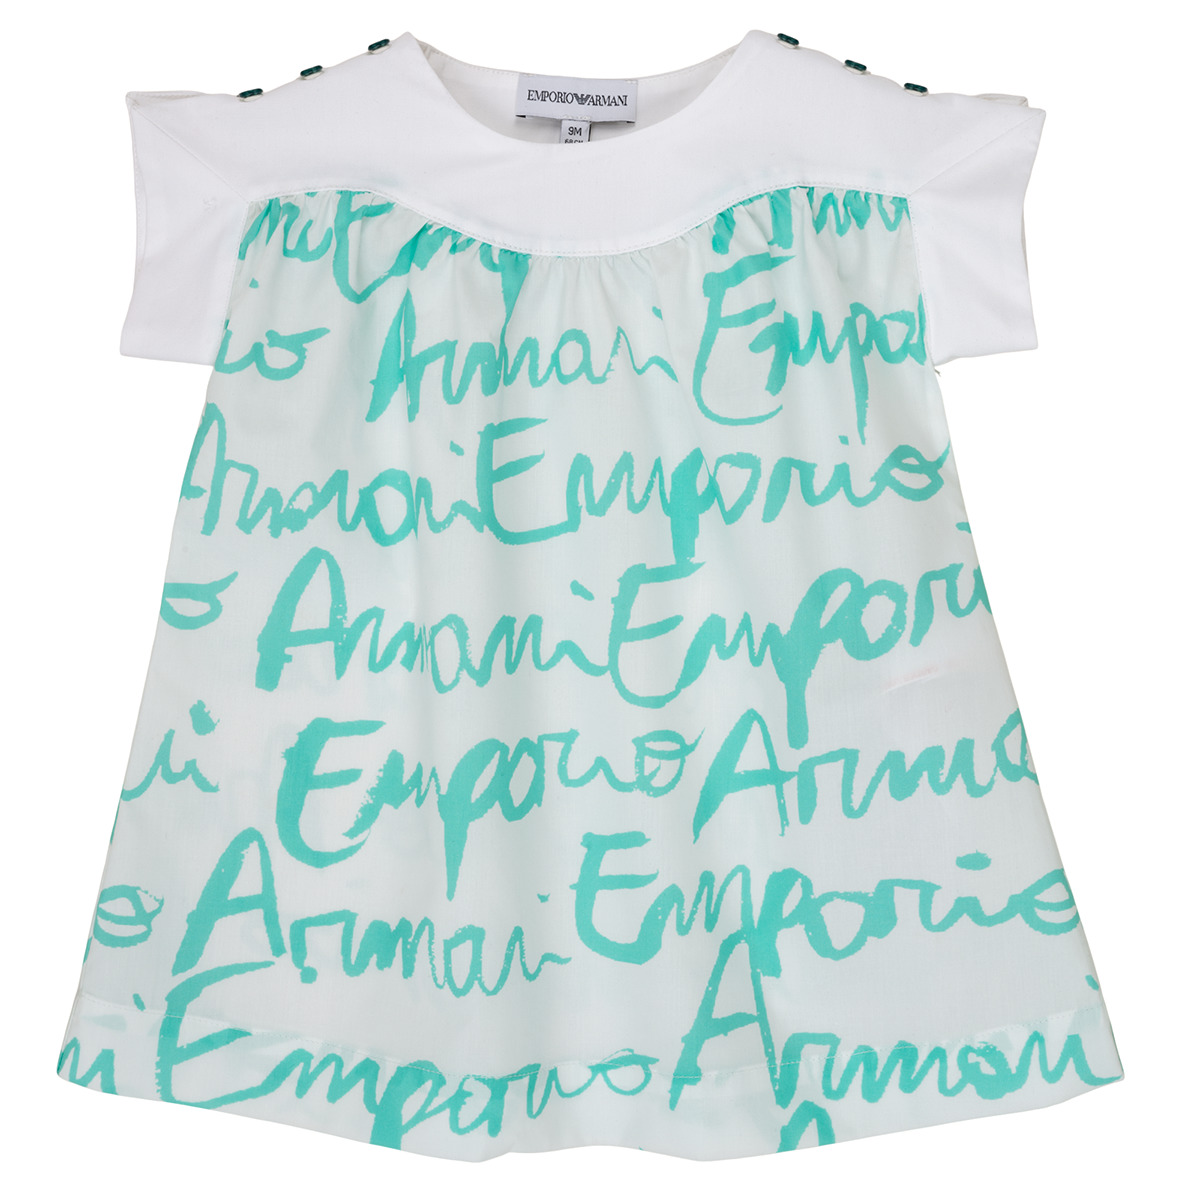 Kleidung Mädchen T-Shirts Emporio Armani Anas Weiss / Blau